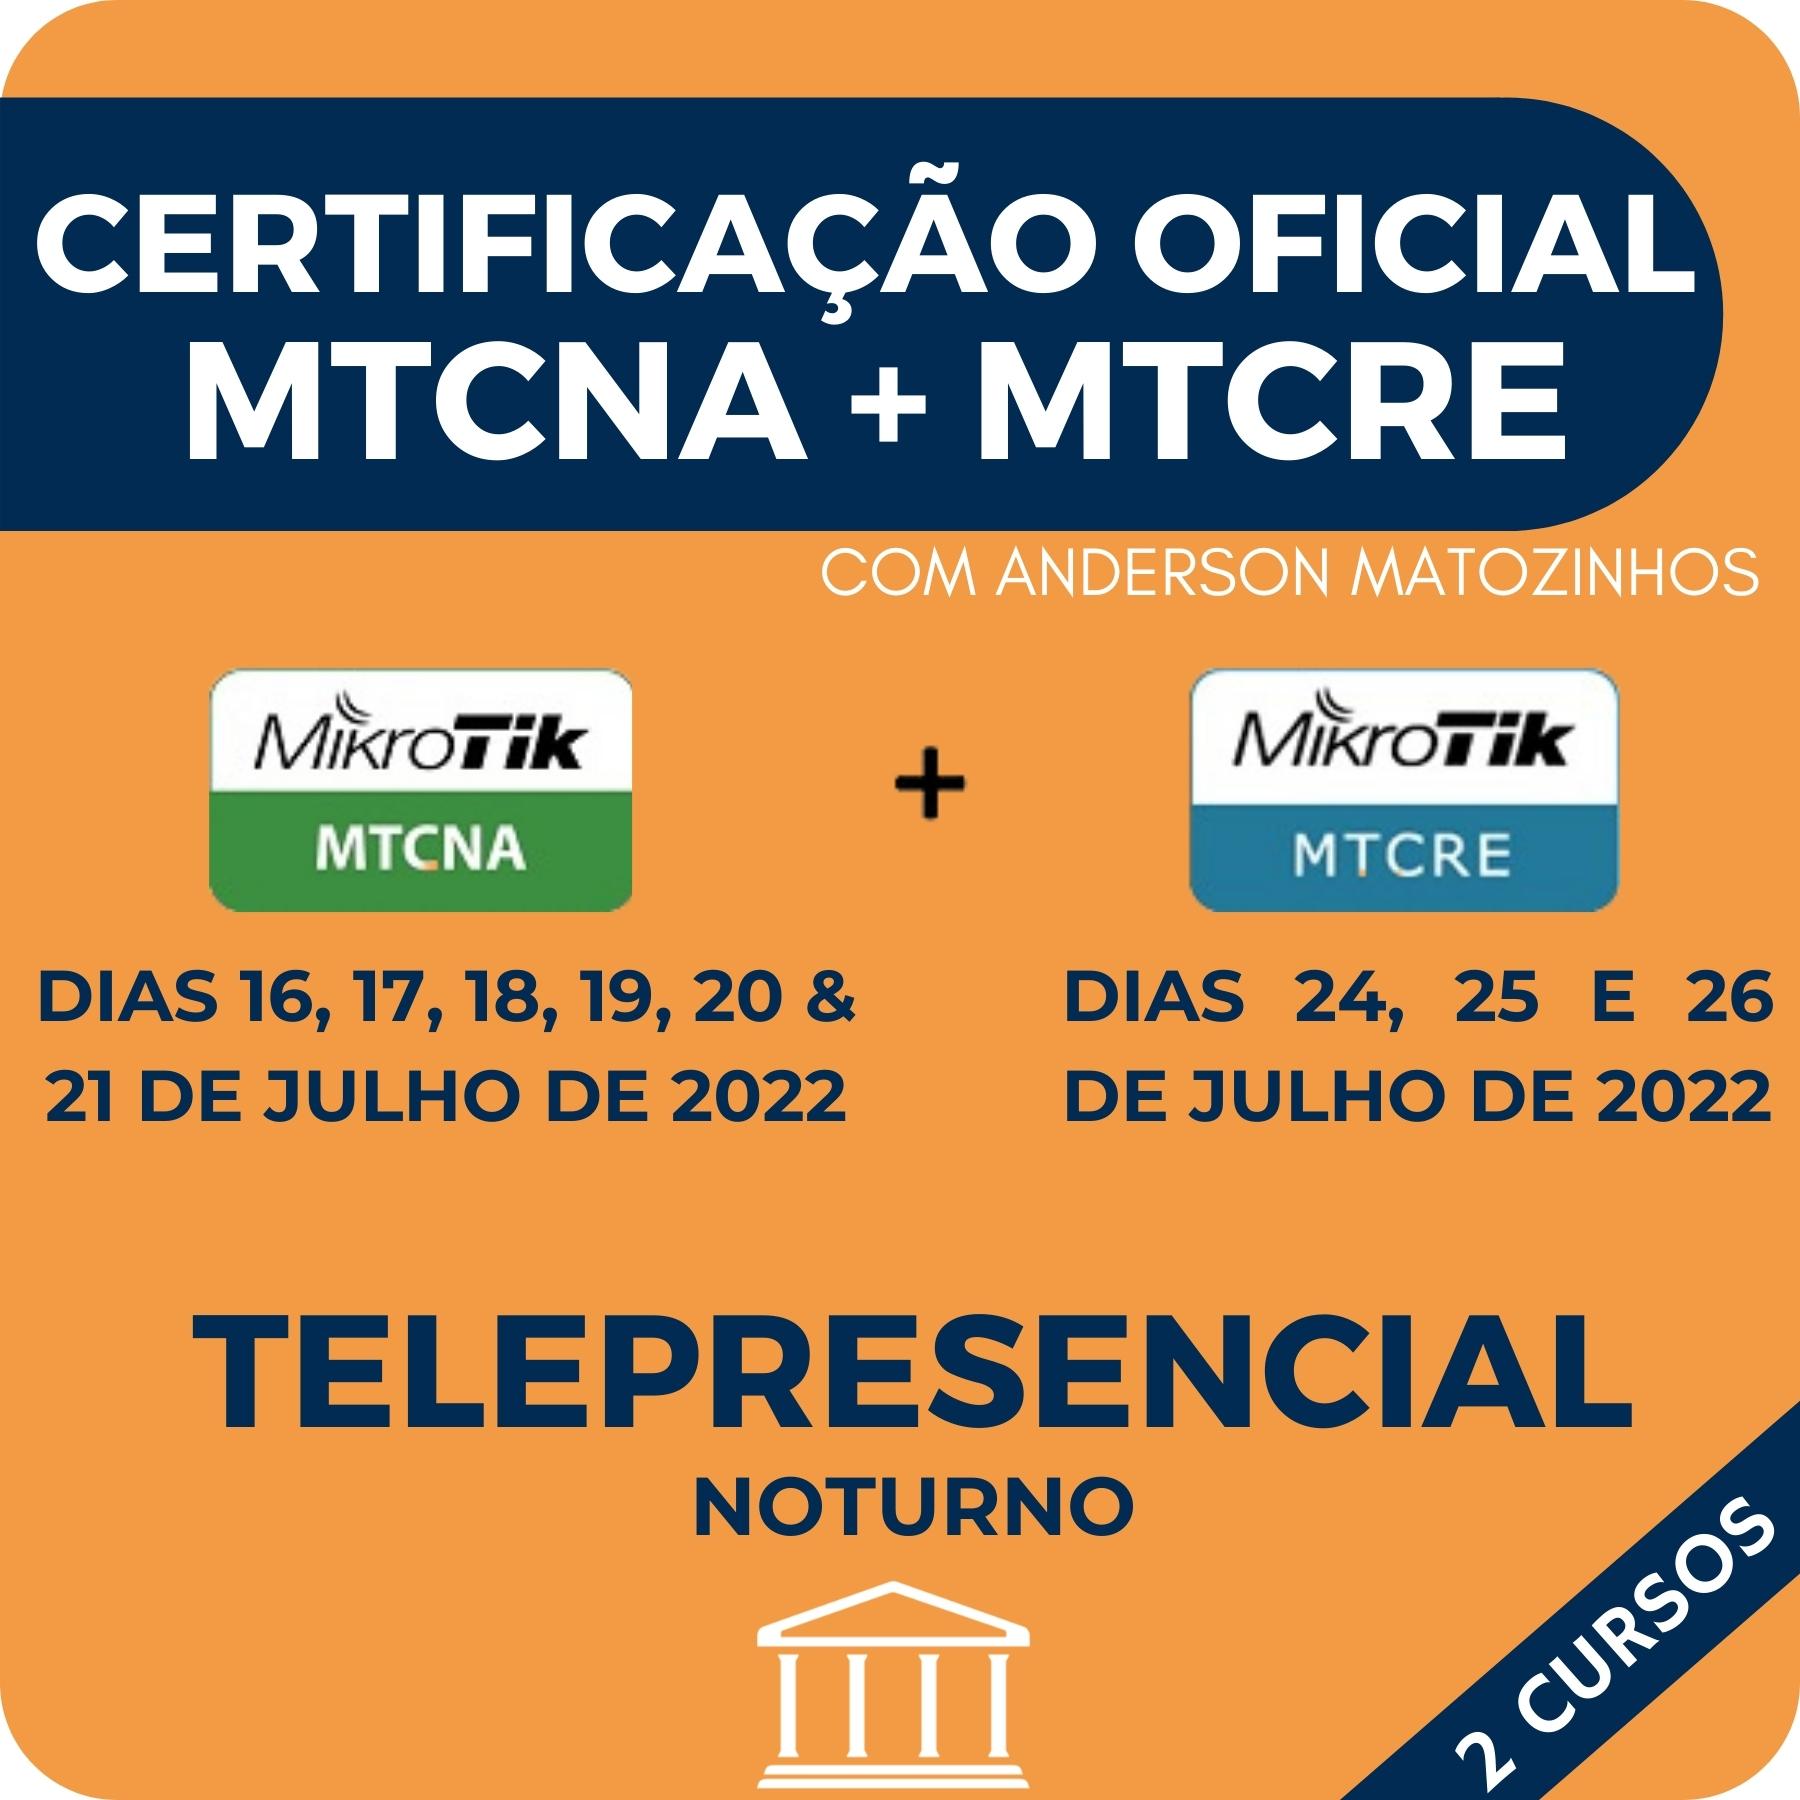 Combo Certificações Oficiais Mikrotik - MTCNA + MTCRE com Anderson Matozinhos - Telepresencial - JULHO 2022  - Voz e Dados Academy